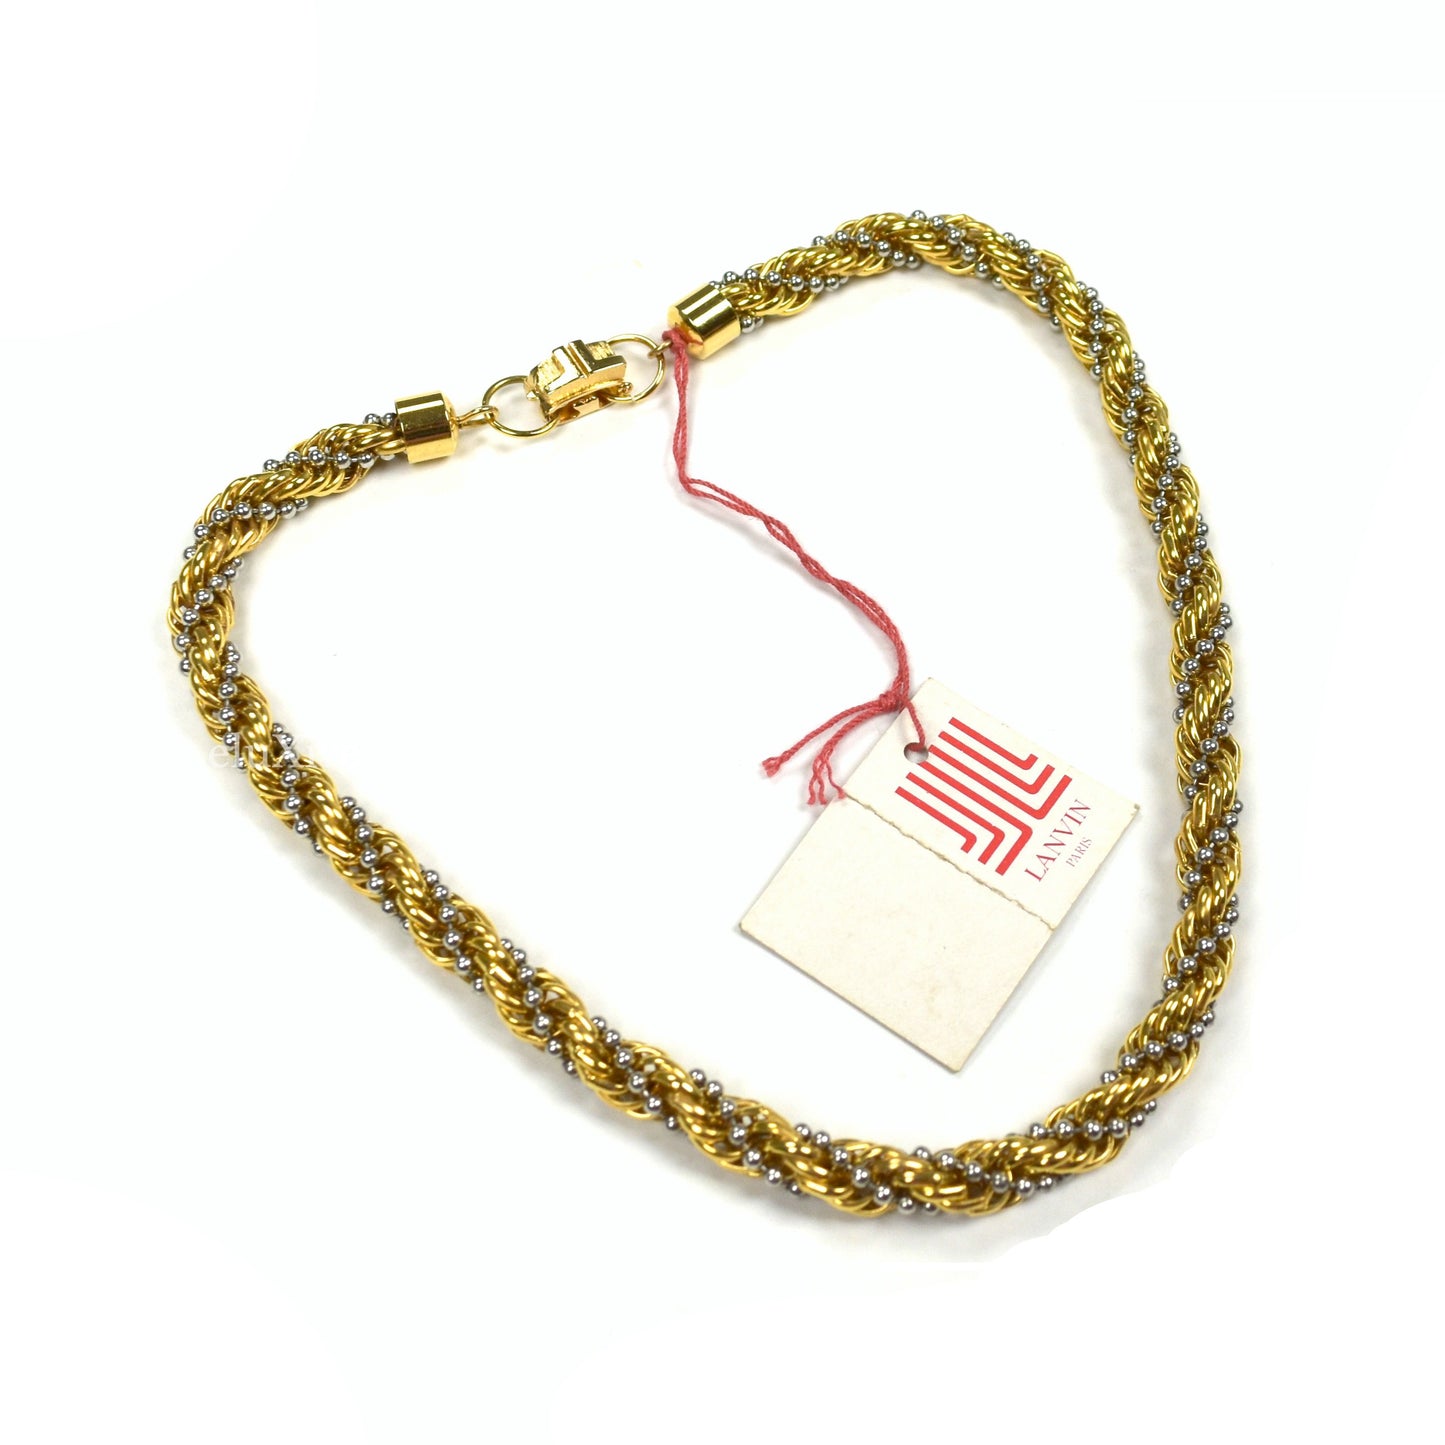 Lanvin - 15.5" Gold & Silver Twist Chain Necklace/Bracelet